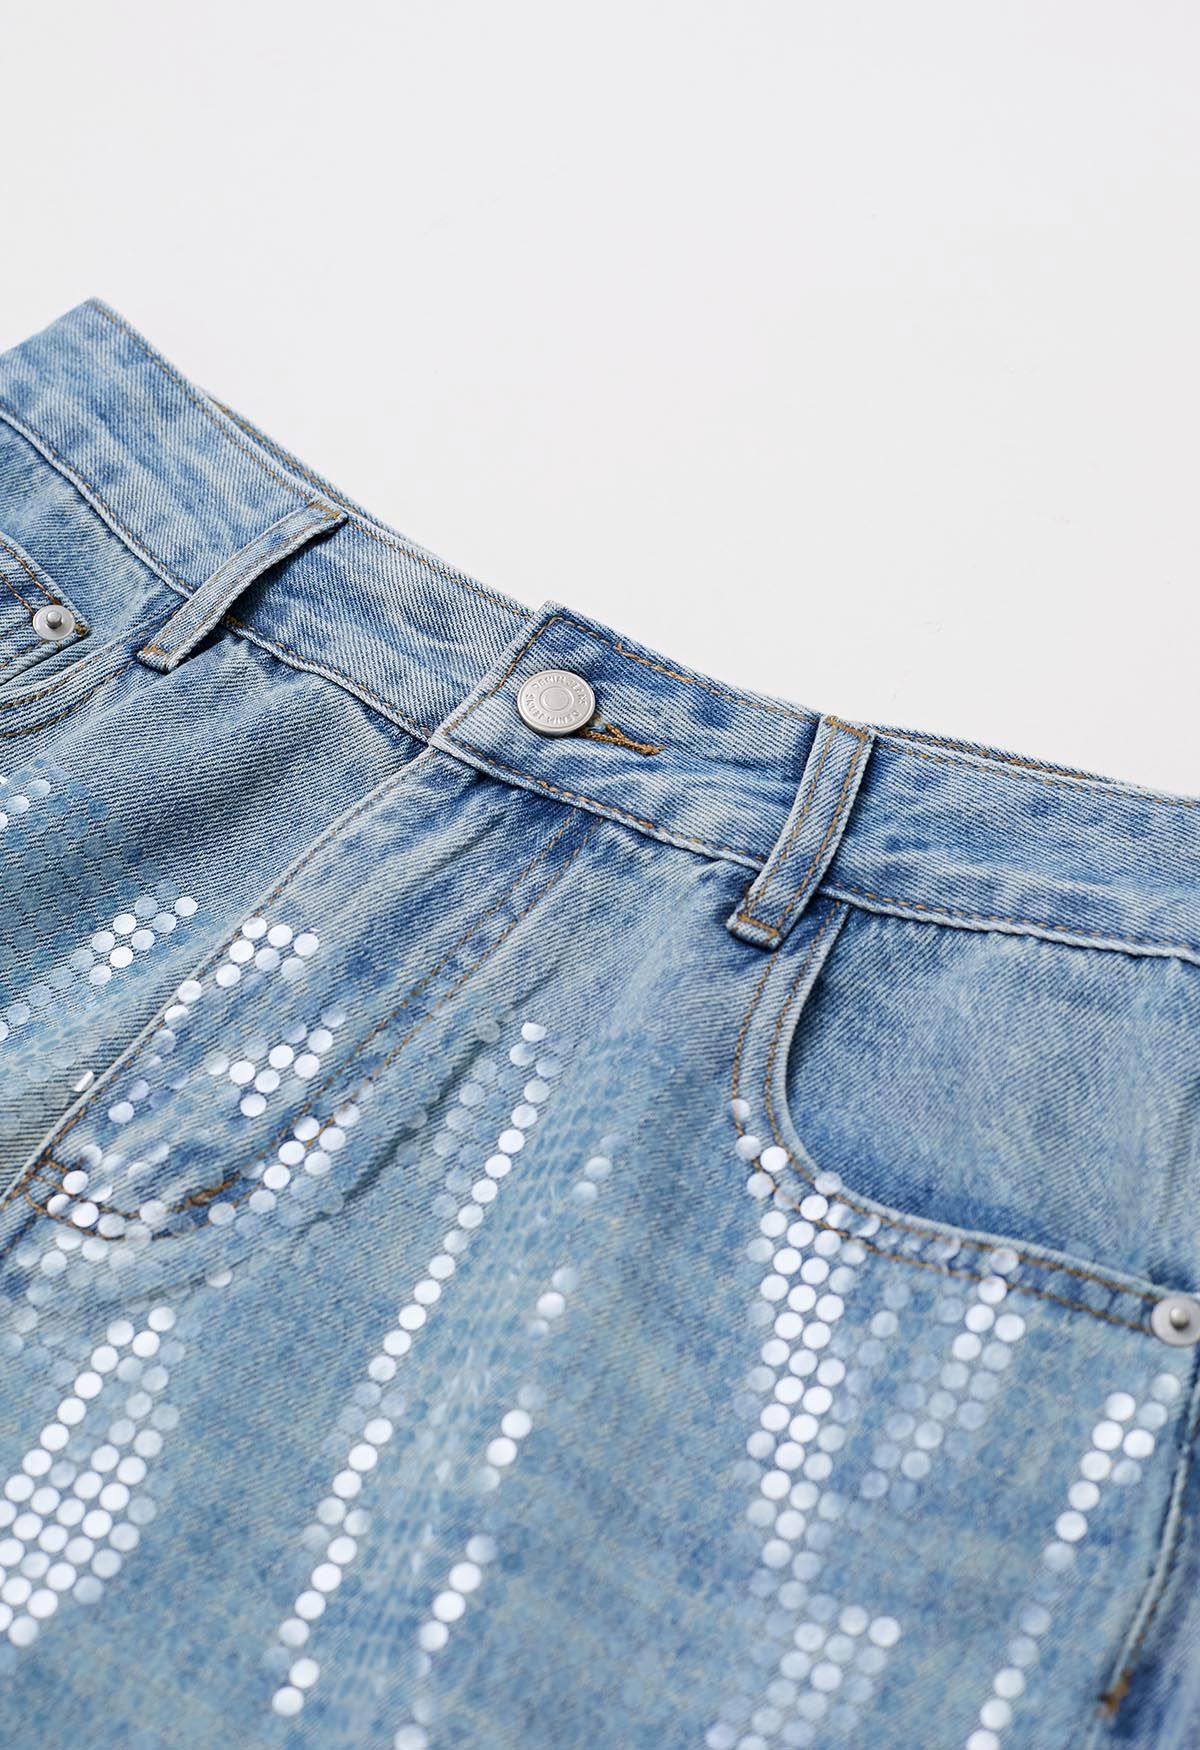 بنطال جينز واسع الساق مزين بالترتر